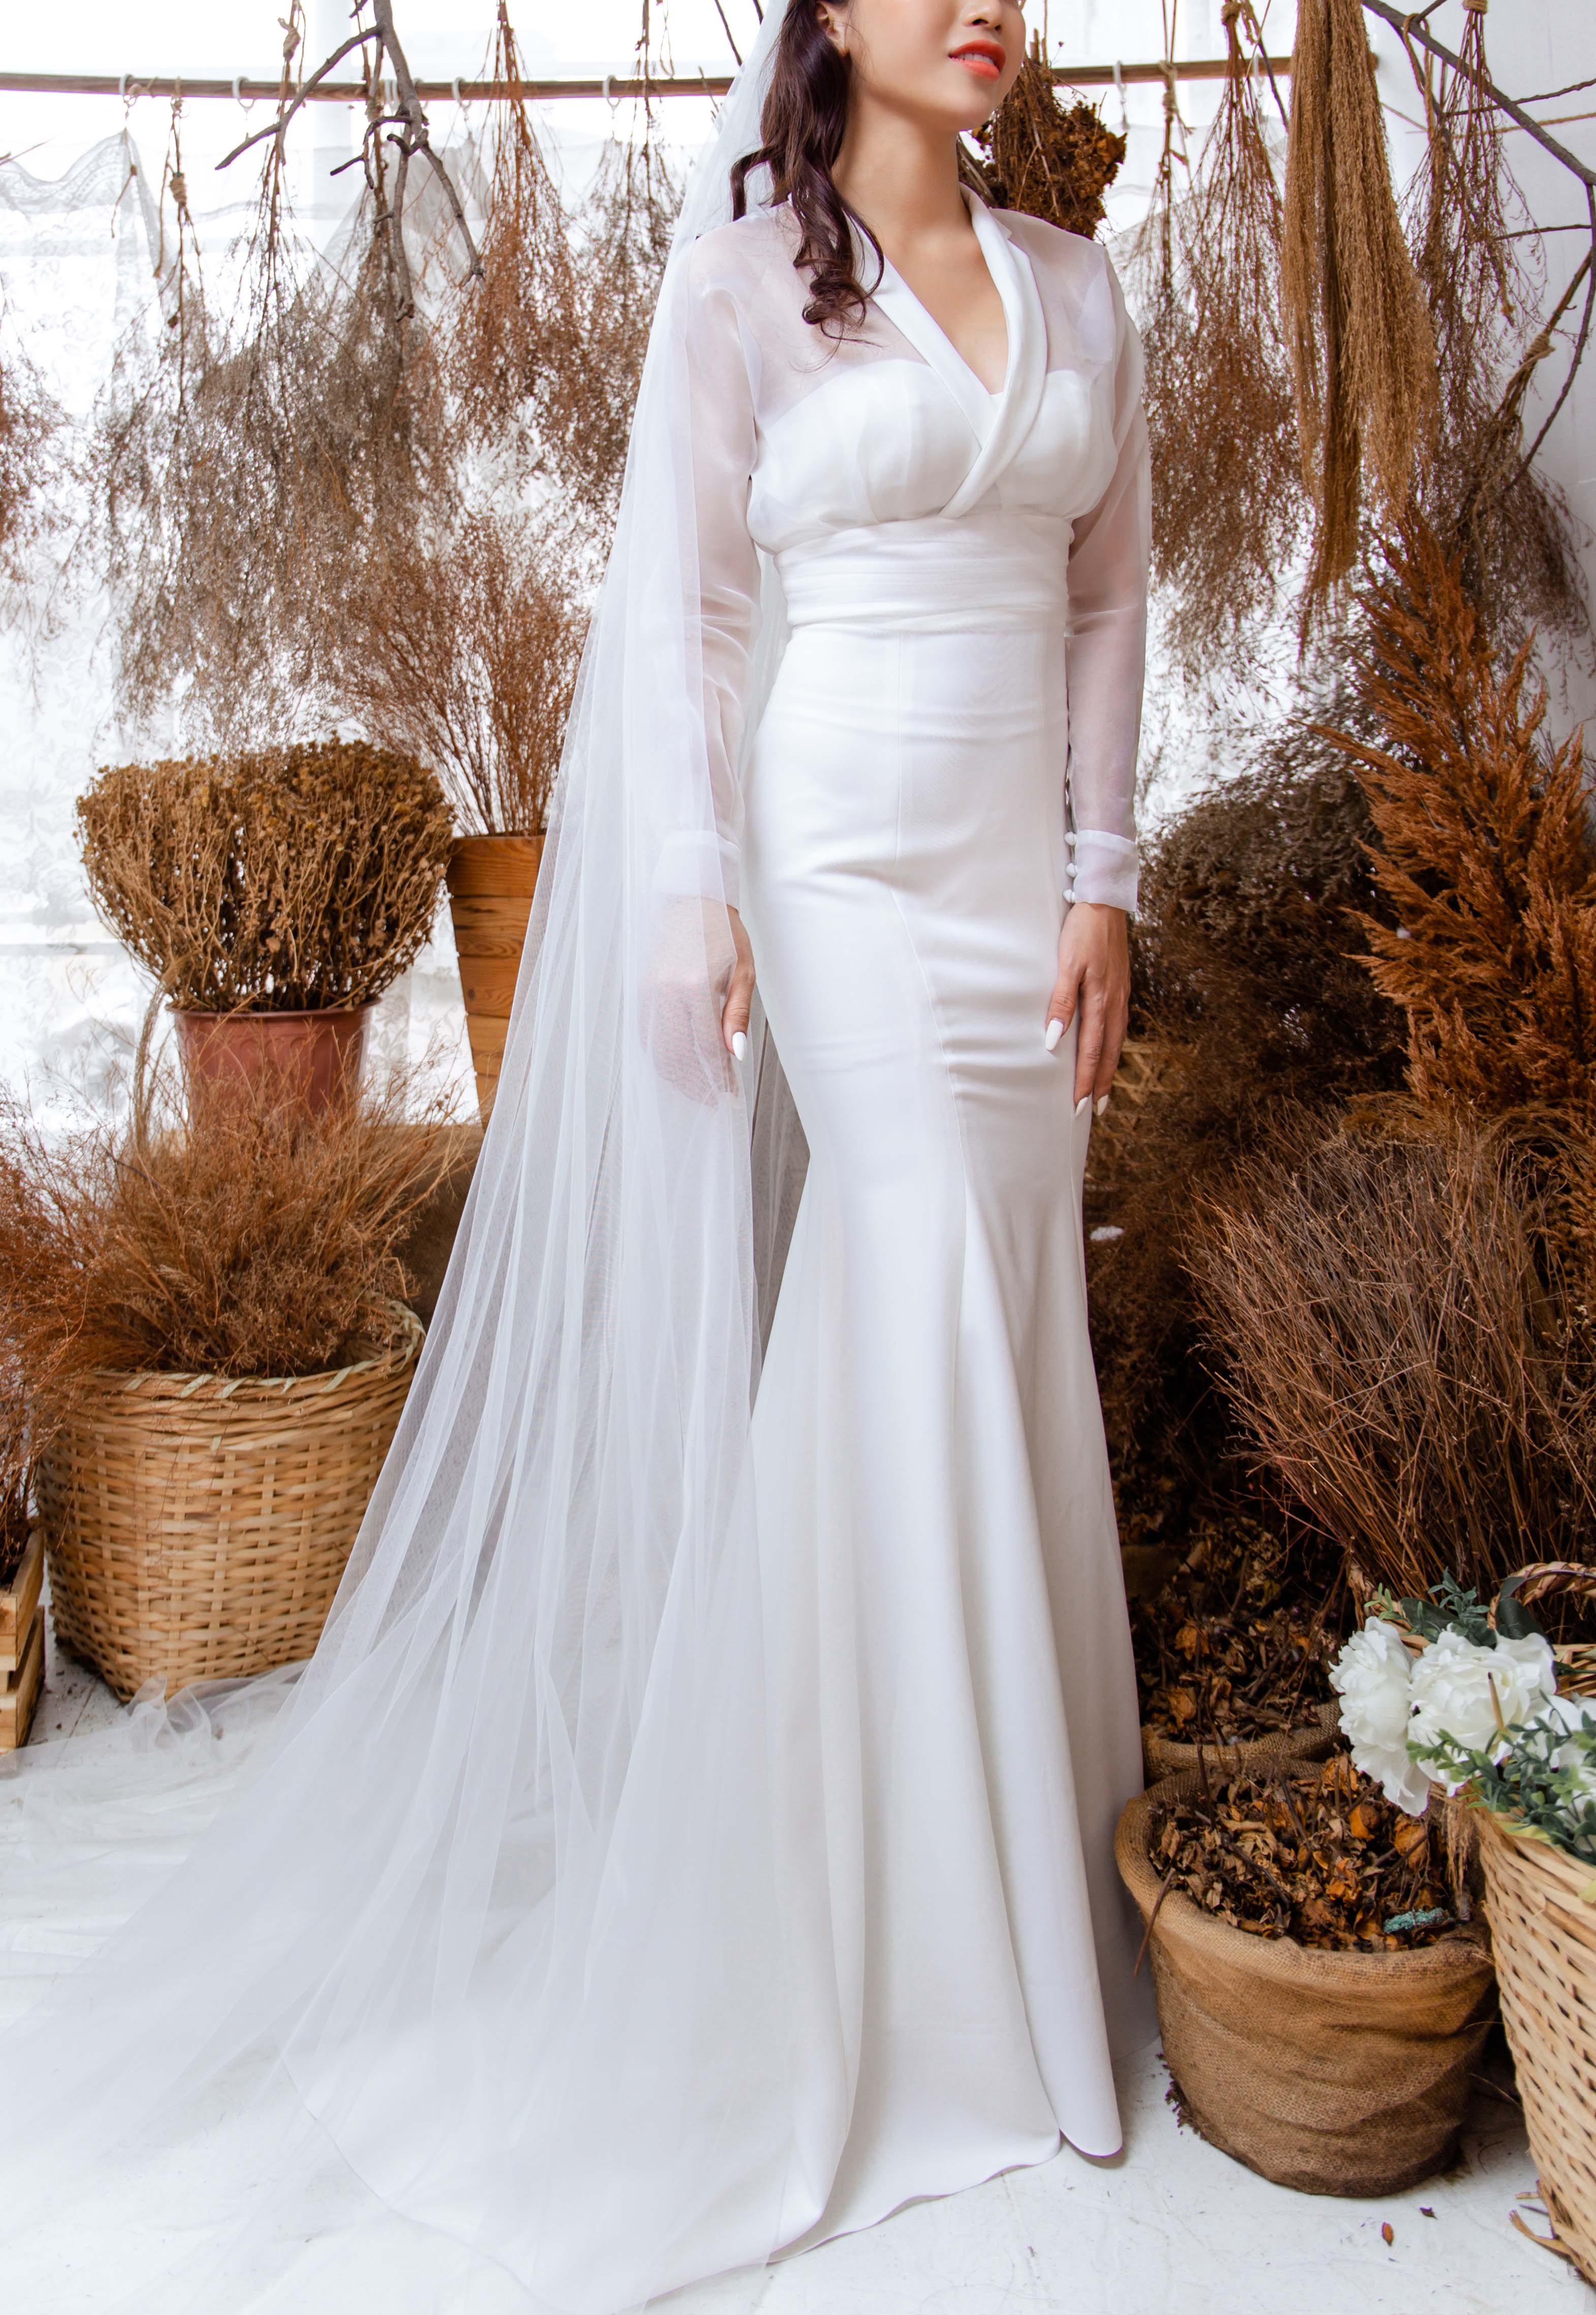 Váy cưới dài tay sang trọng, đơn giản cho cô dâu đi bàn #1008